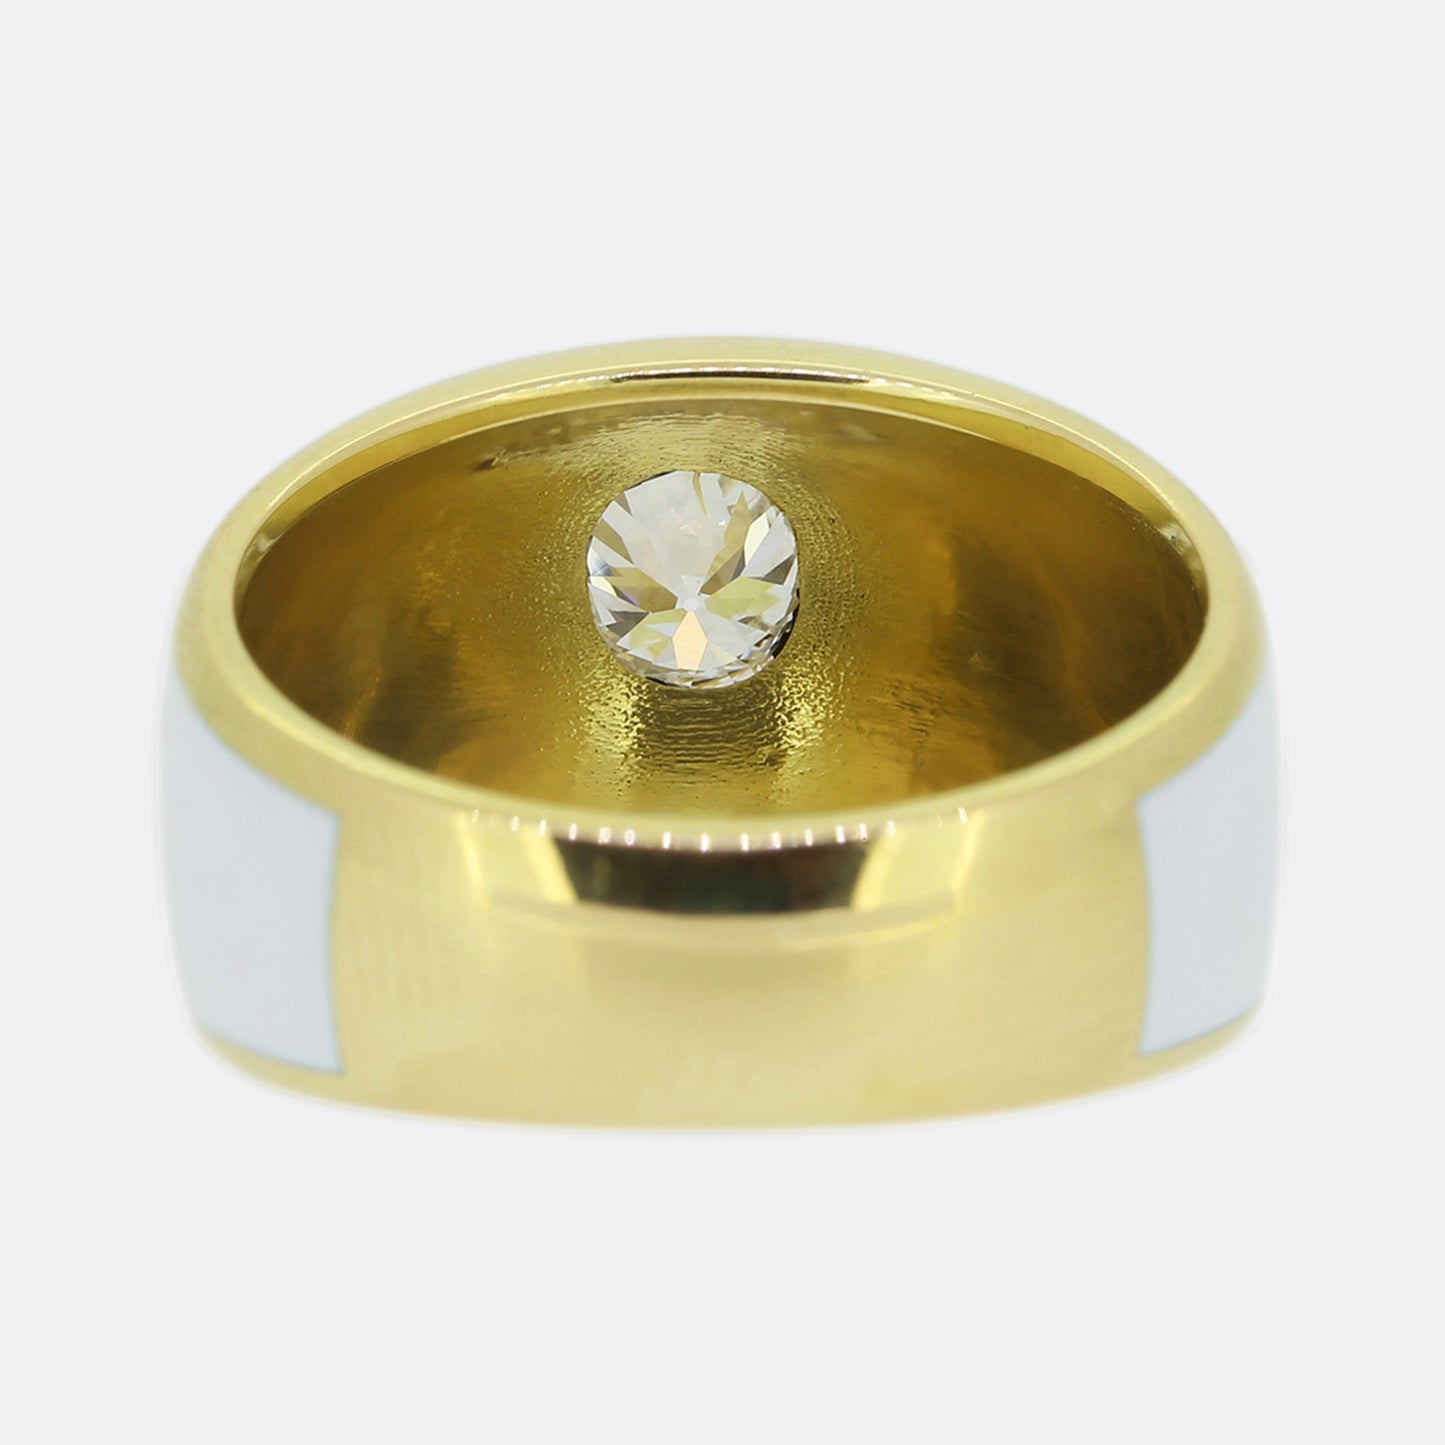 Gaetano Chiavetta White Enamel and Old Cut Diamond Ring